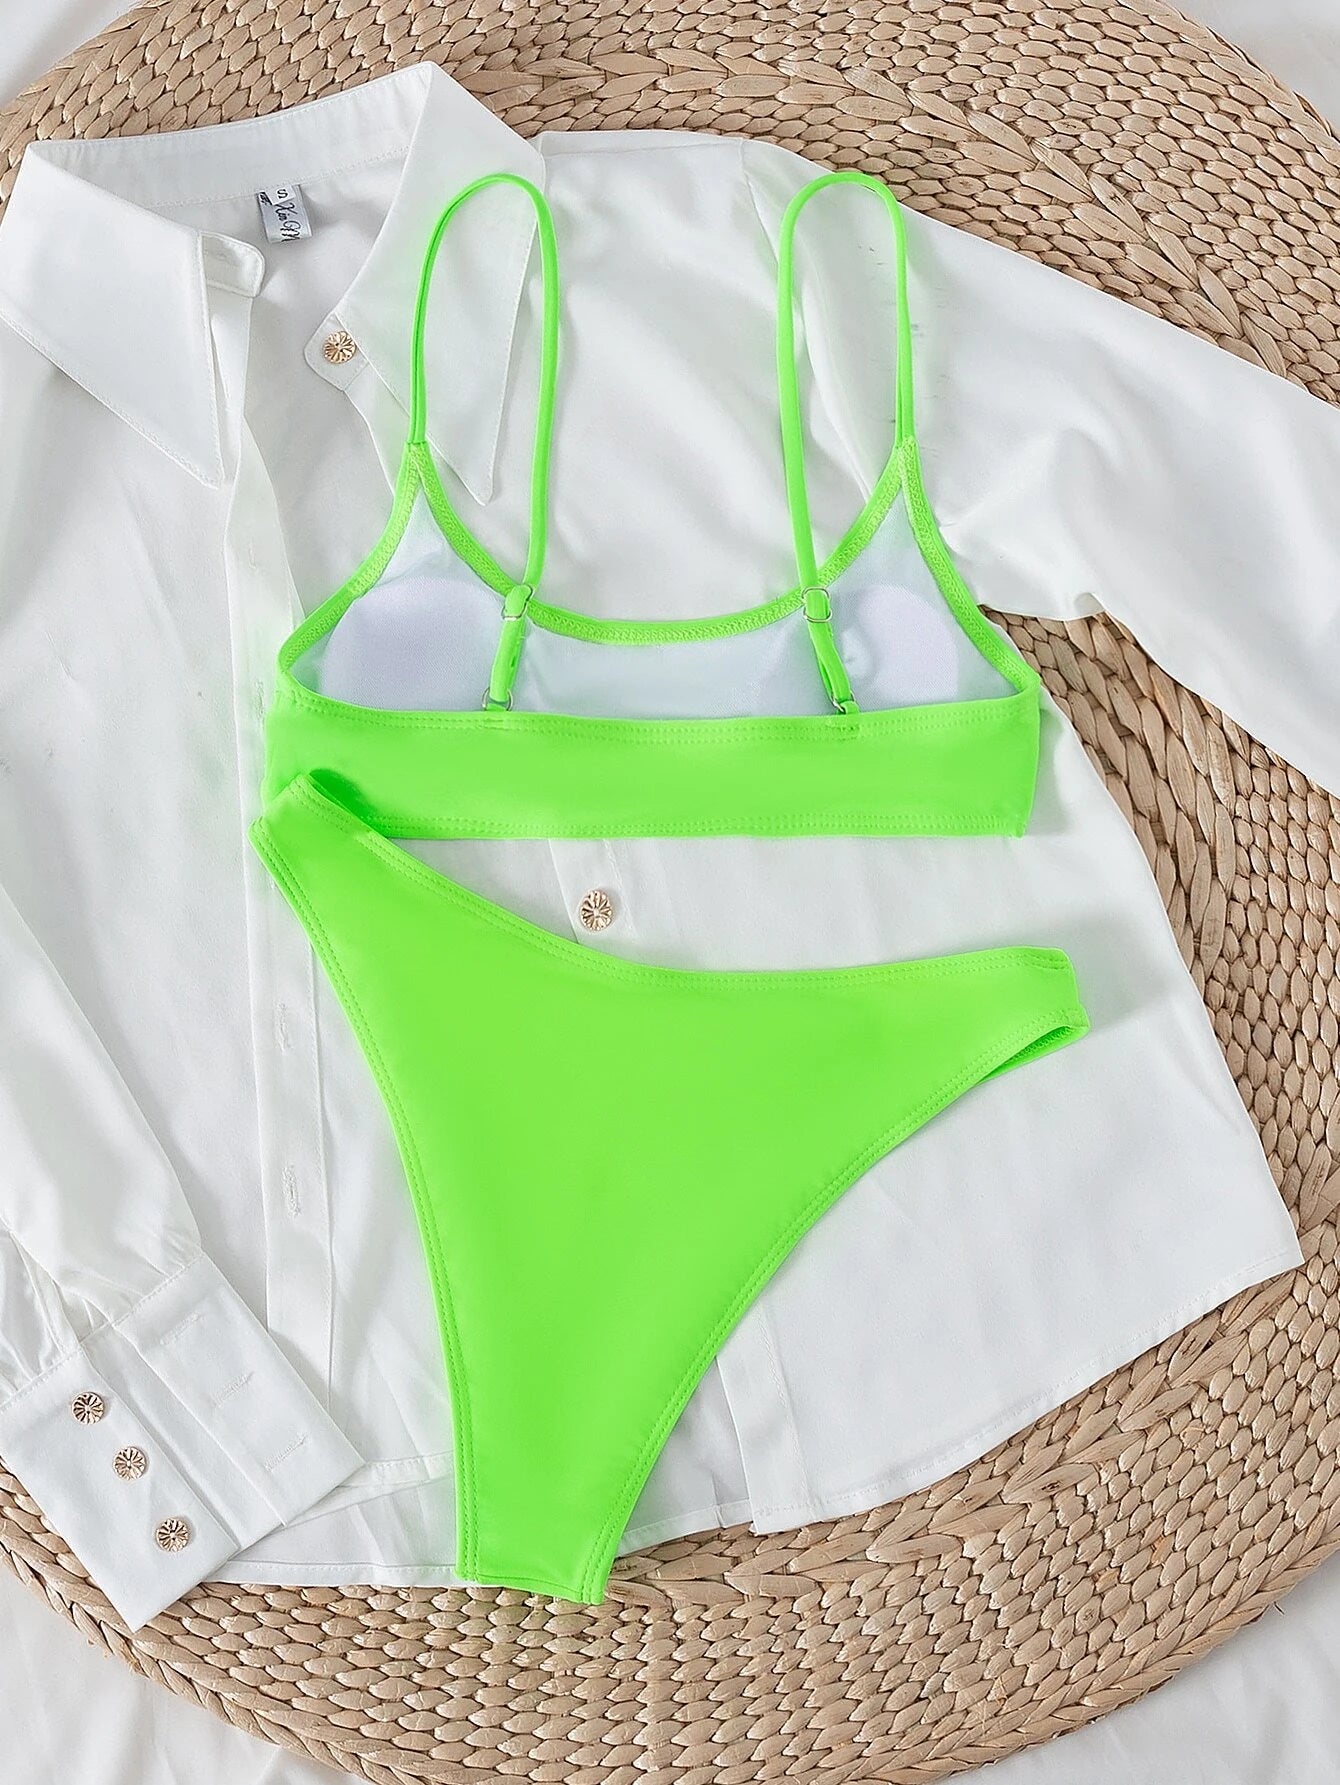 SHEIN Swim Basics Summer Beach Plain High Cut Bikini Set